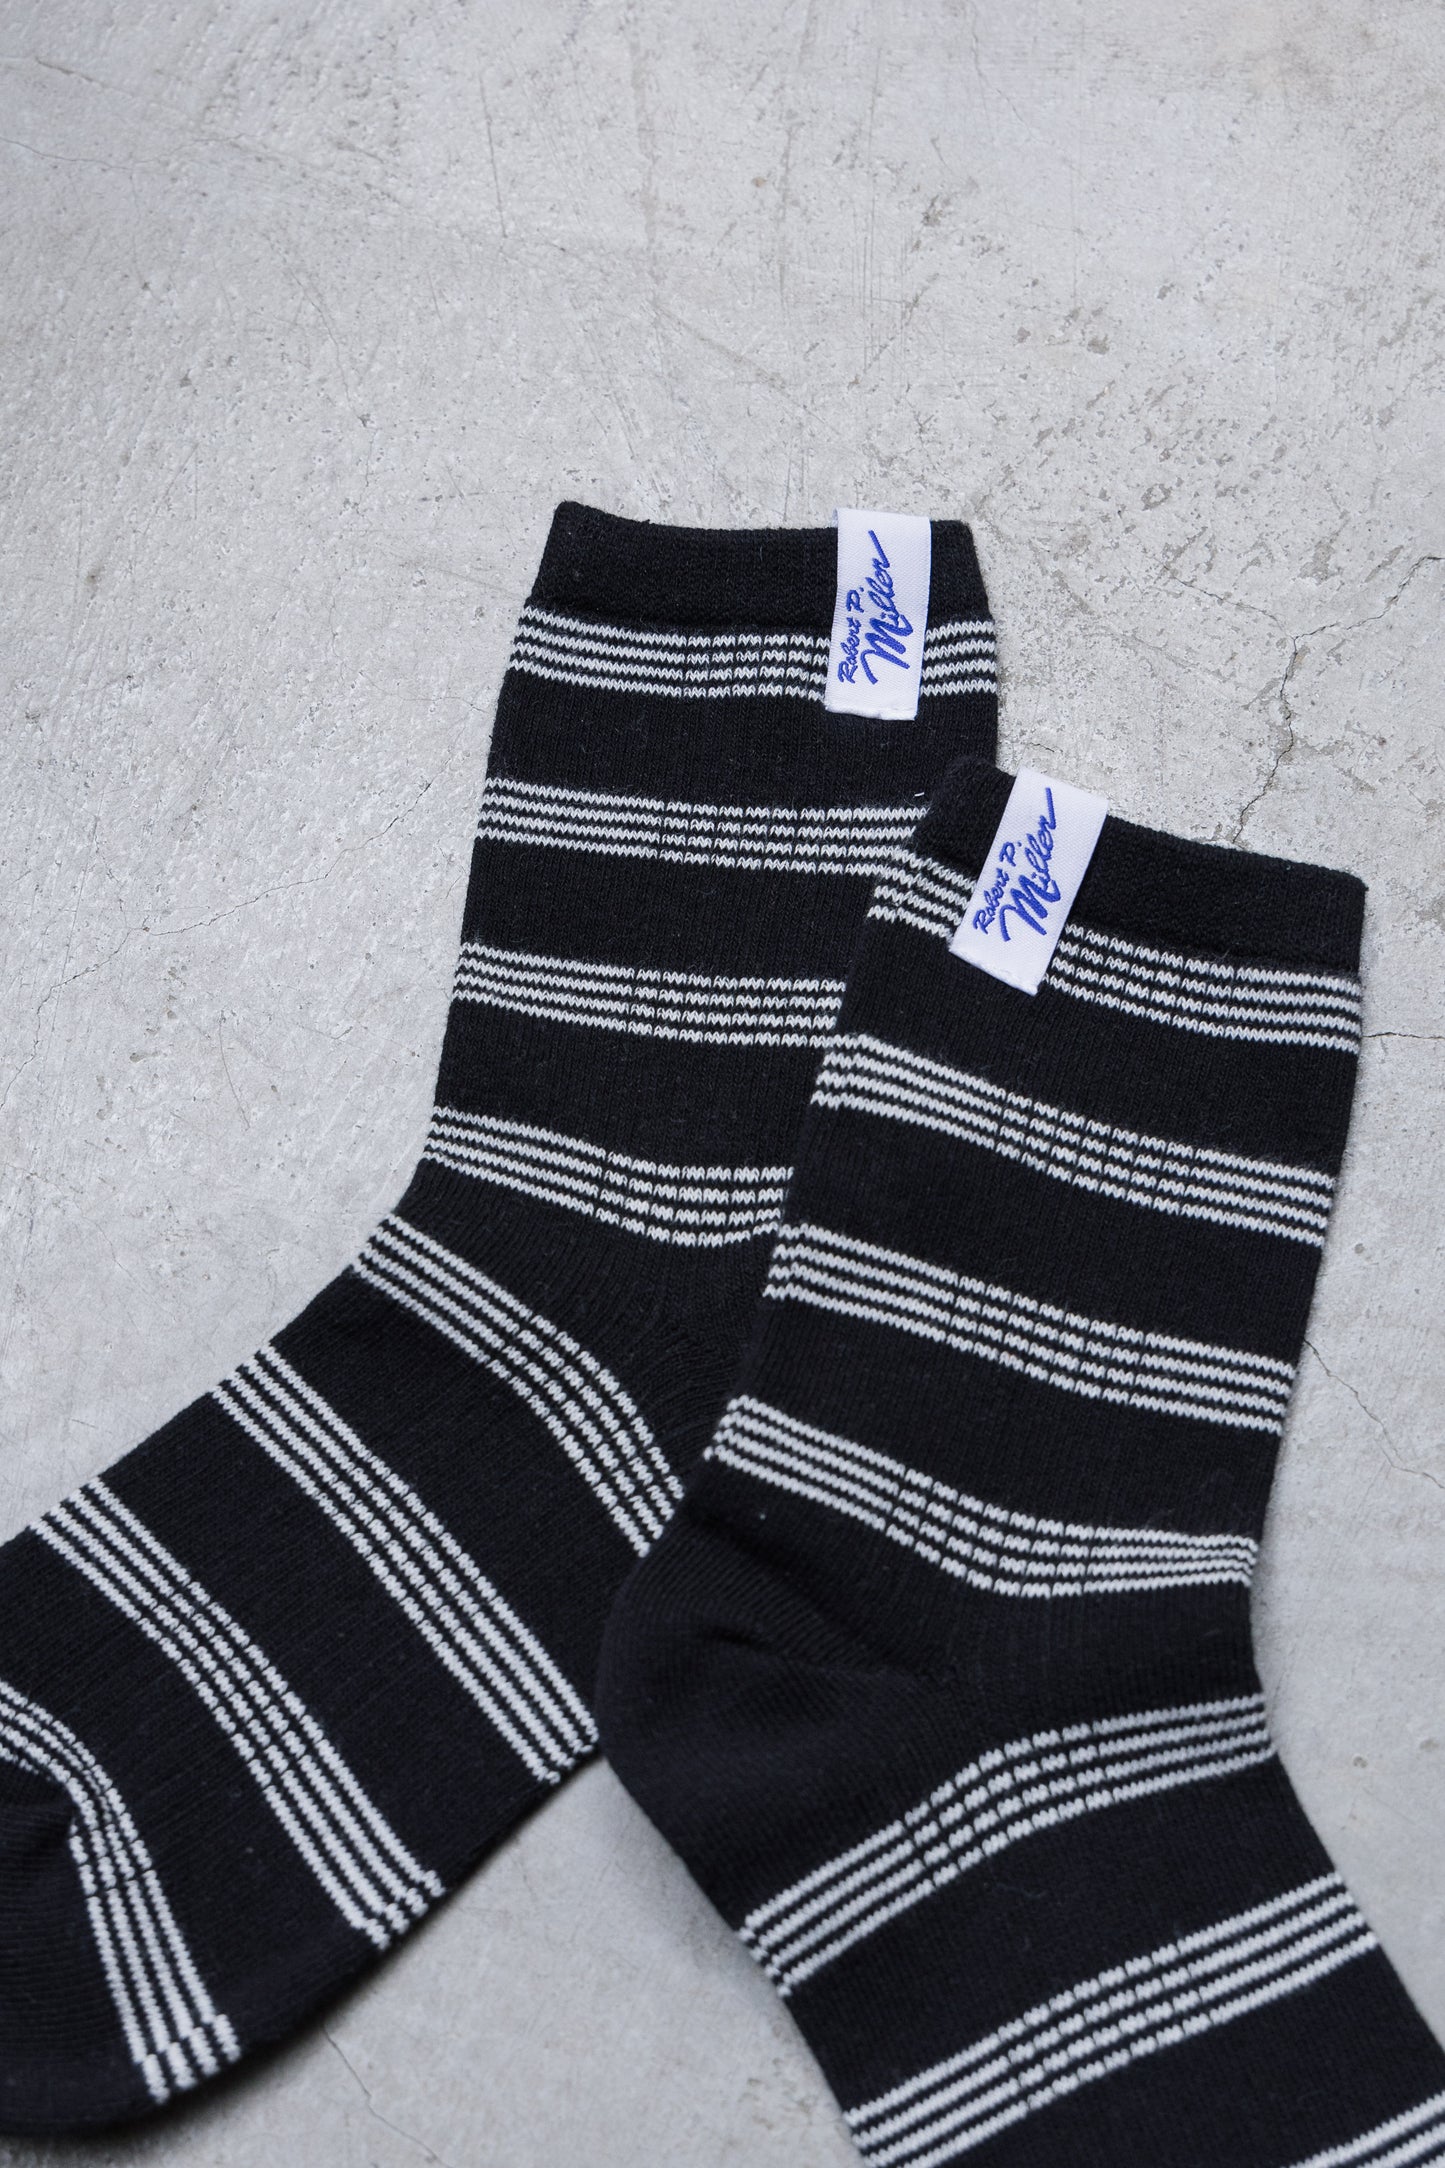 Robert p miller Striped Socks